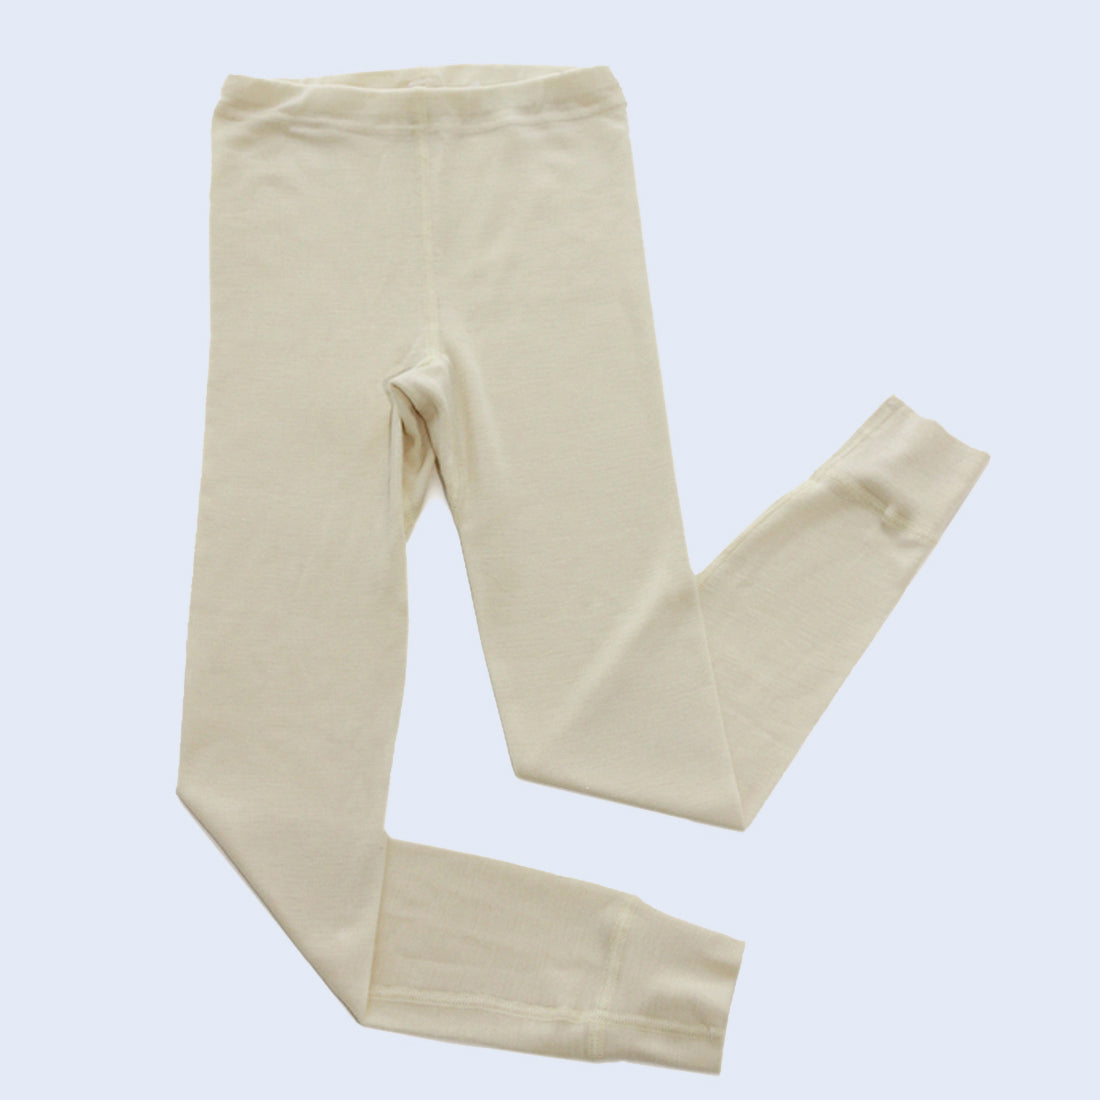 Hocosa Women's Long Underwear Pants in Organic Wool – Danish